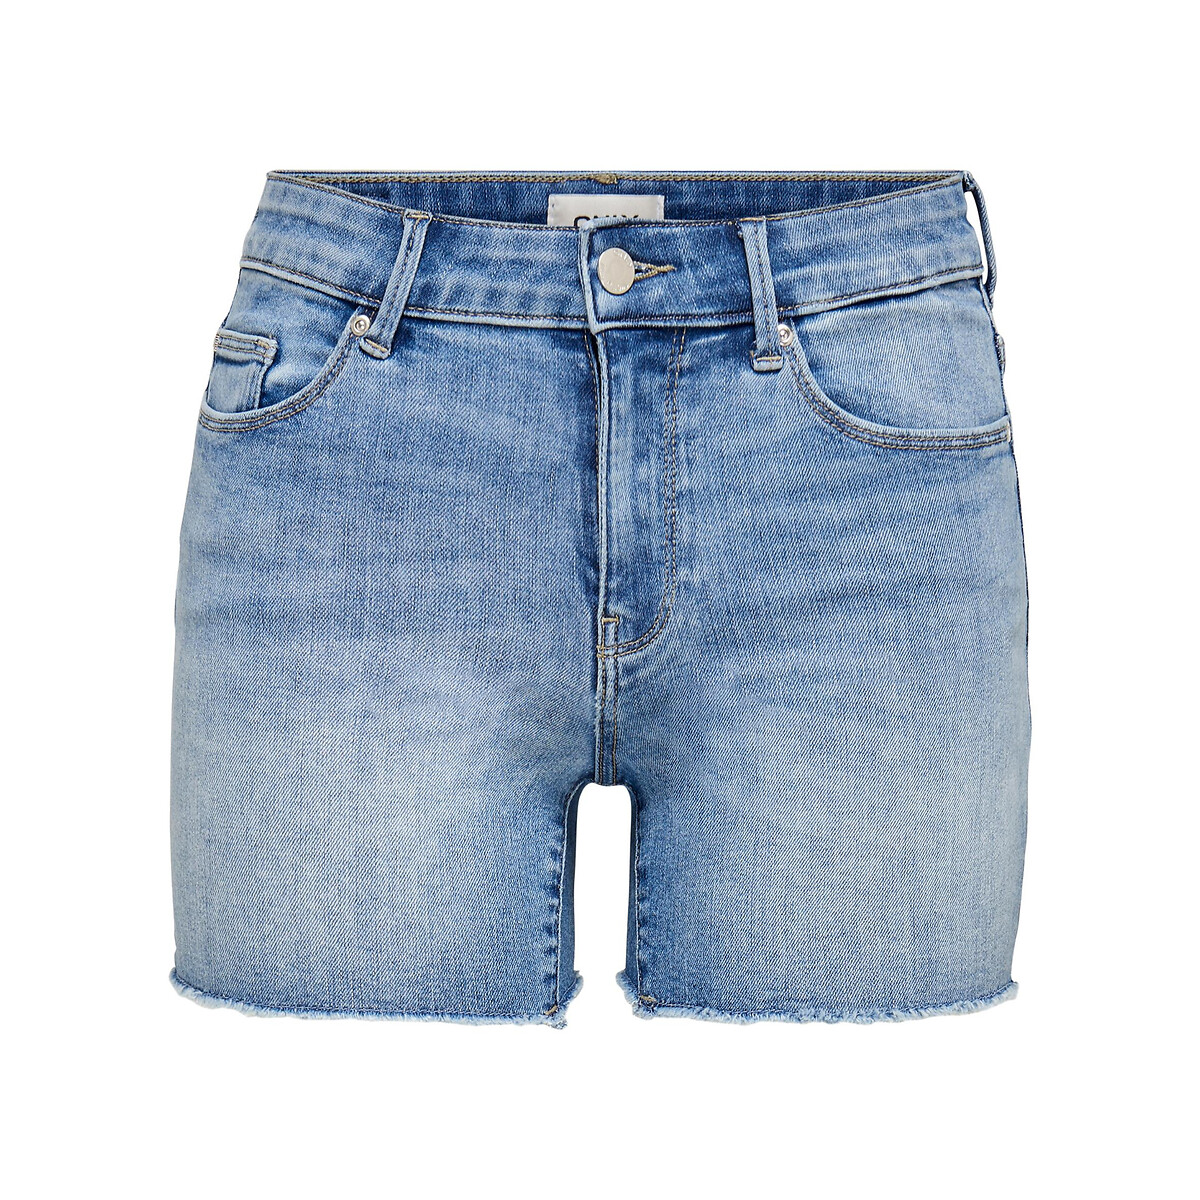 Шорты Из джинсовой ткани 3XL синий LaRedoute, размер 3XL - фото 4